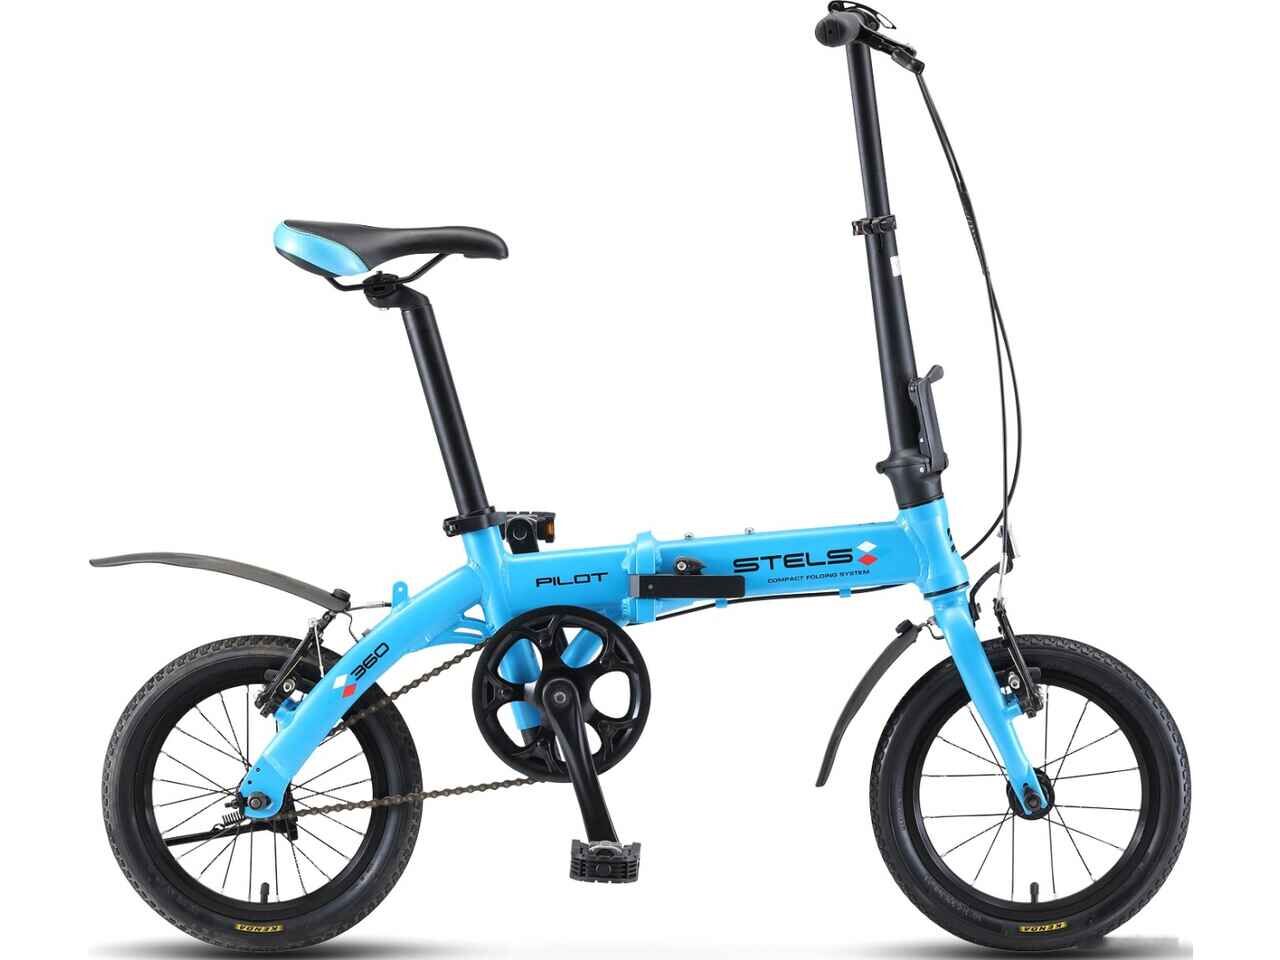 Велосипед Stels Pilot 360 14 V010 (голубой, 2019)